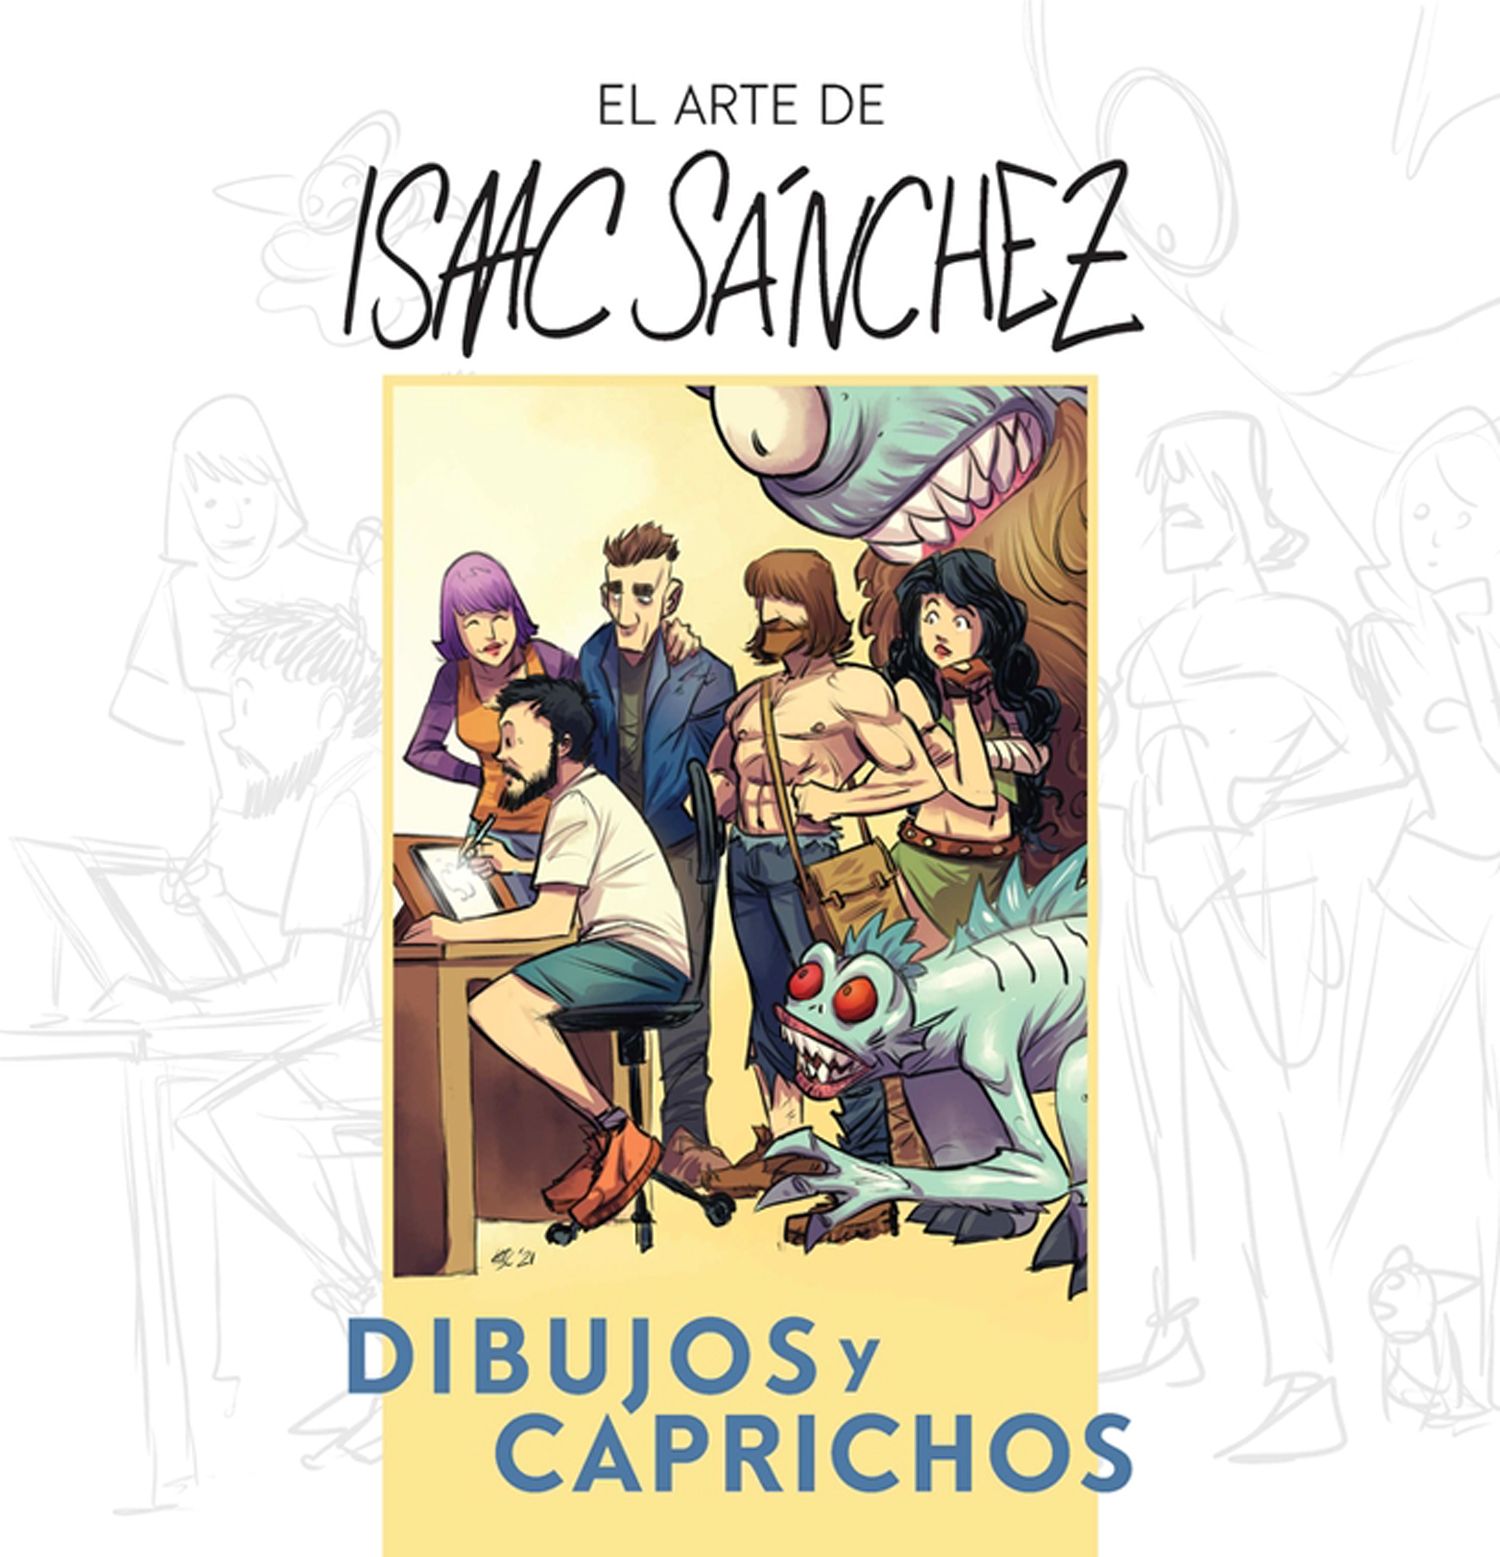 Arte de Isaac Sánchez, El. Dibujos y caprichos